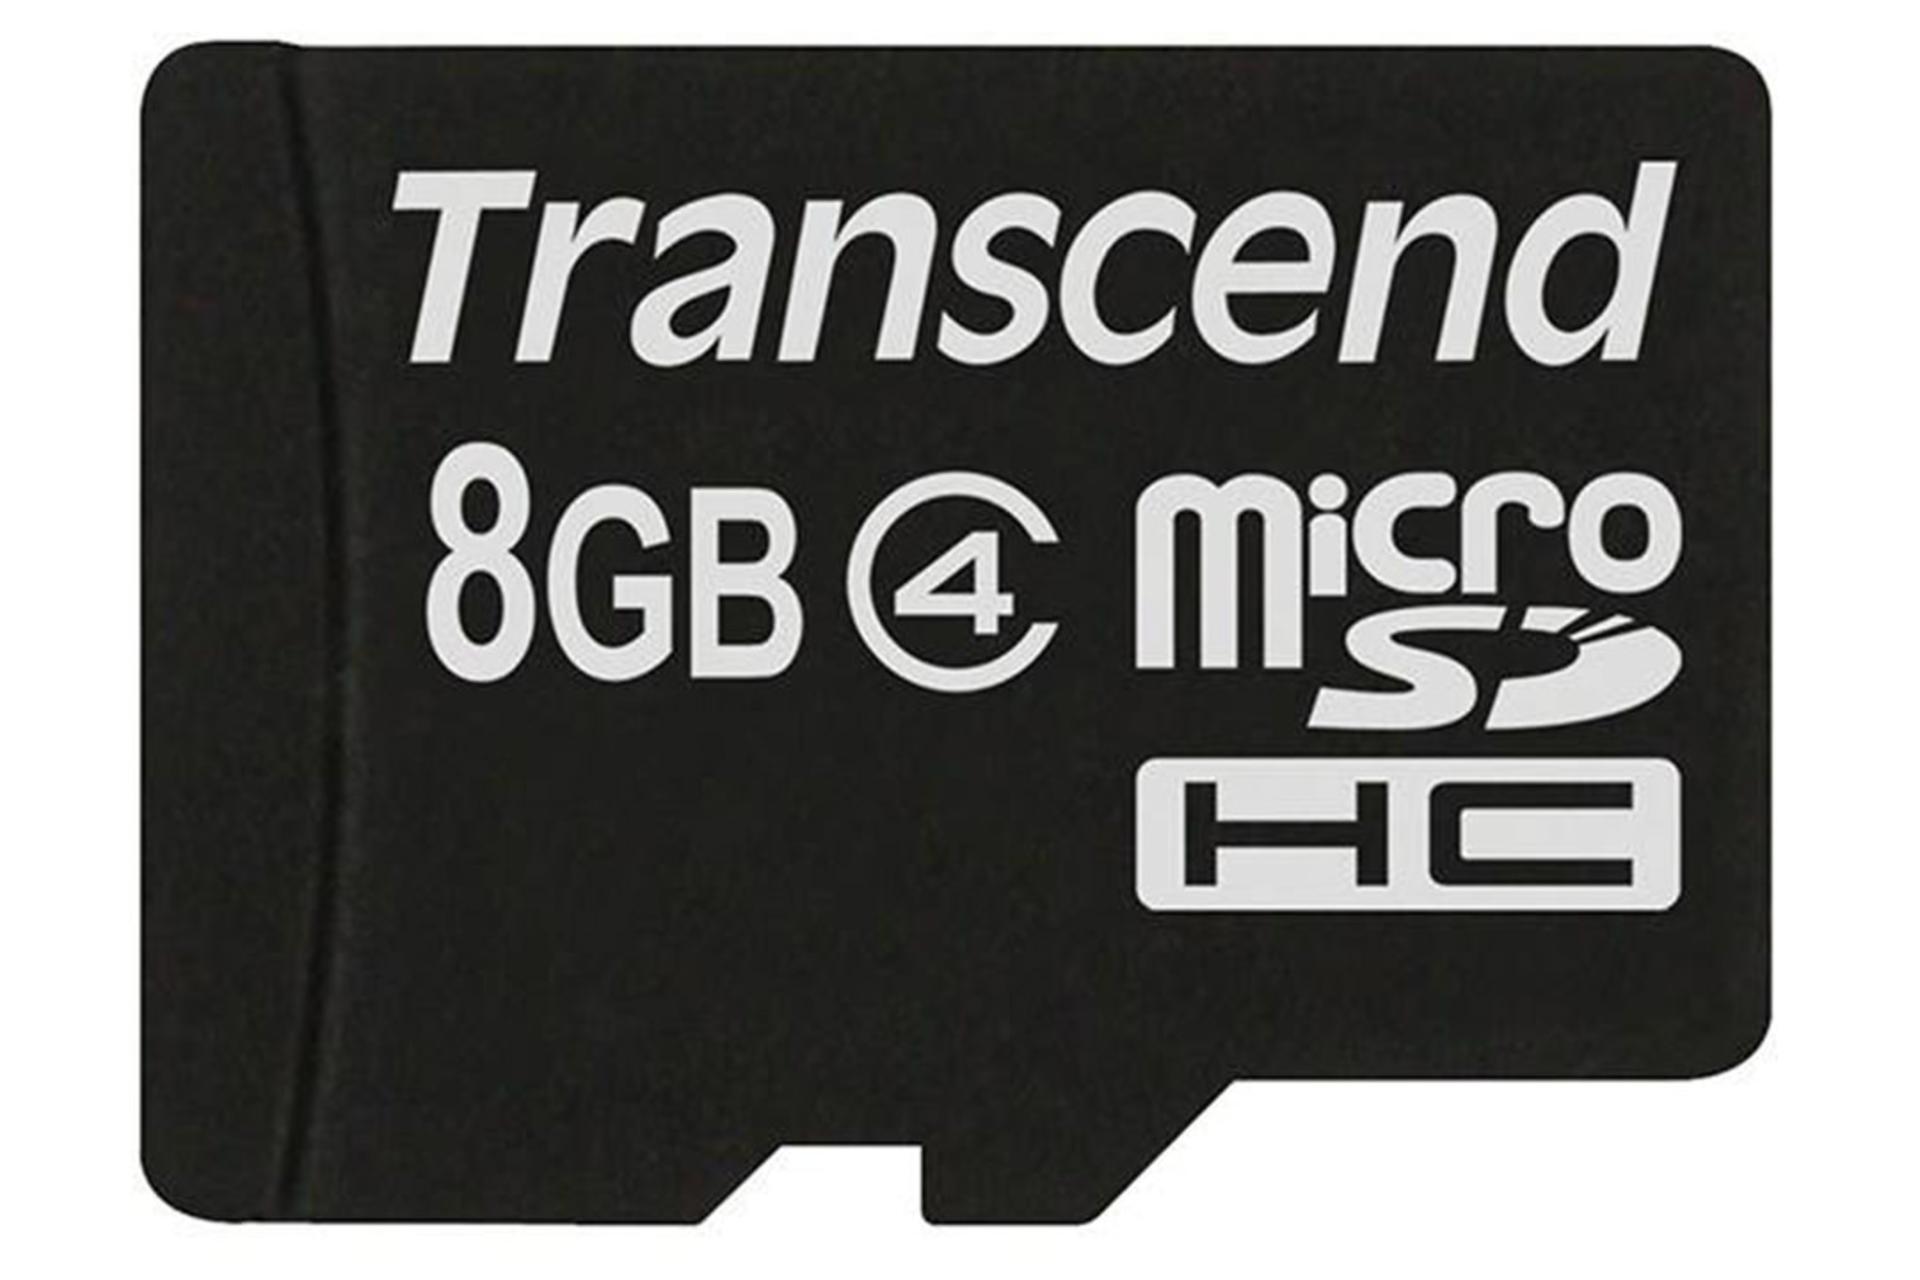 Transcend microSDHC Class 4 8GB